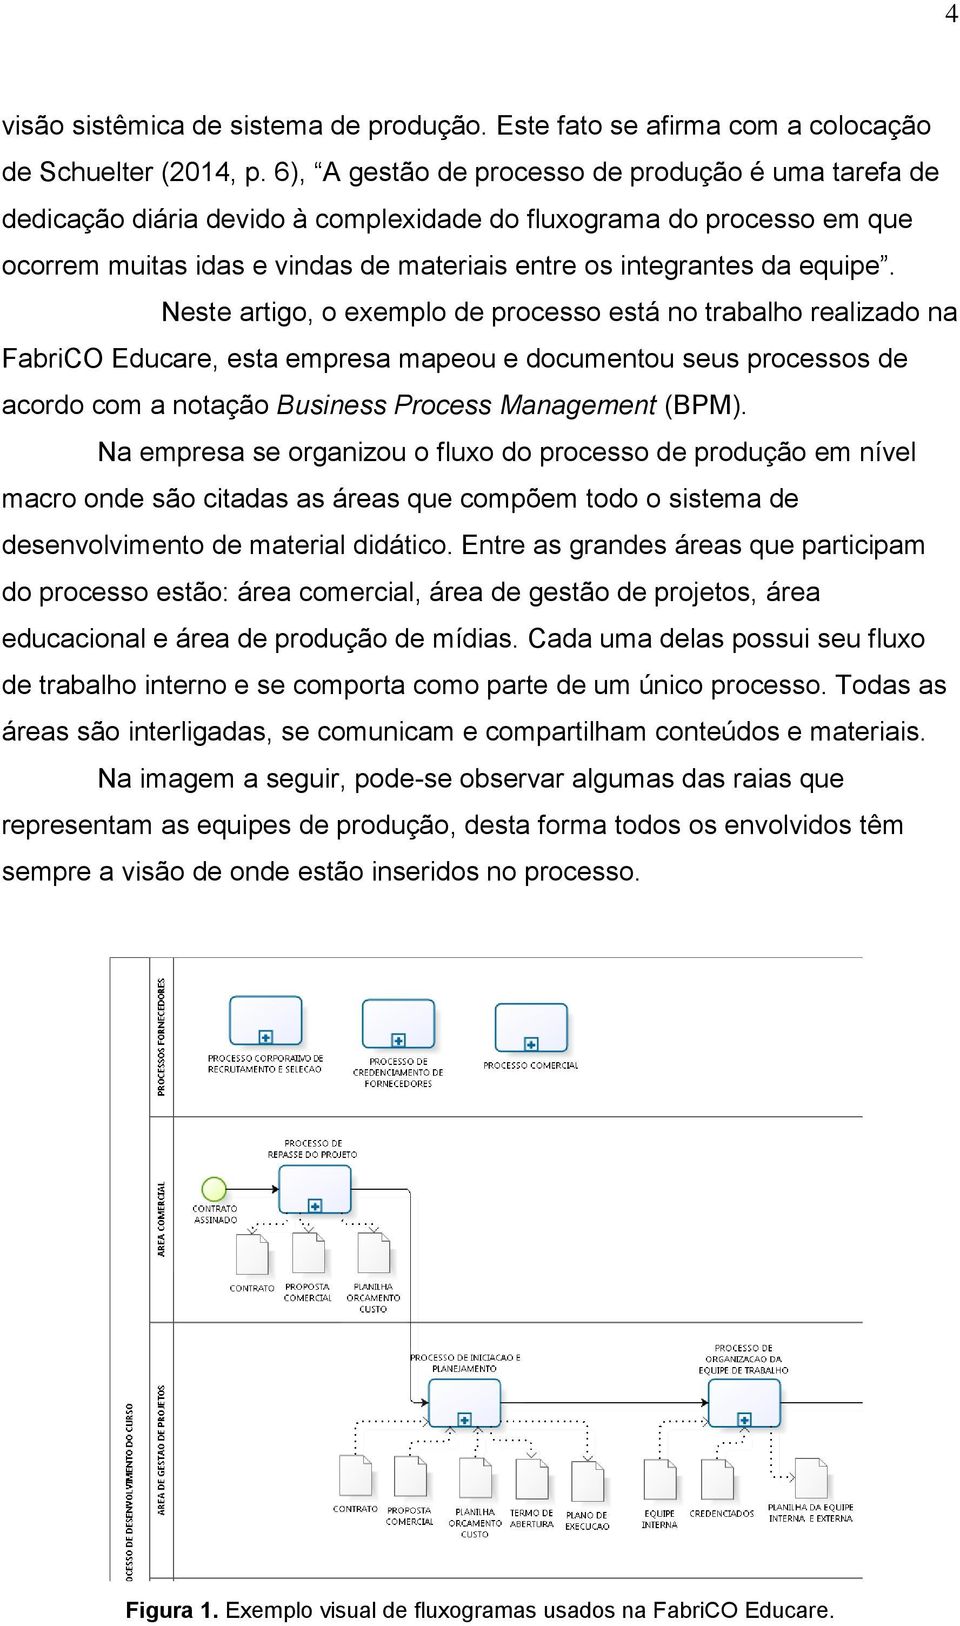 Neste artigo, o exemplo de processo está no trabalho realizado na FabriCO Educare, esta empresa mapeou e documentou seus processos de acordo com a notação Business Process Management (BPM).